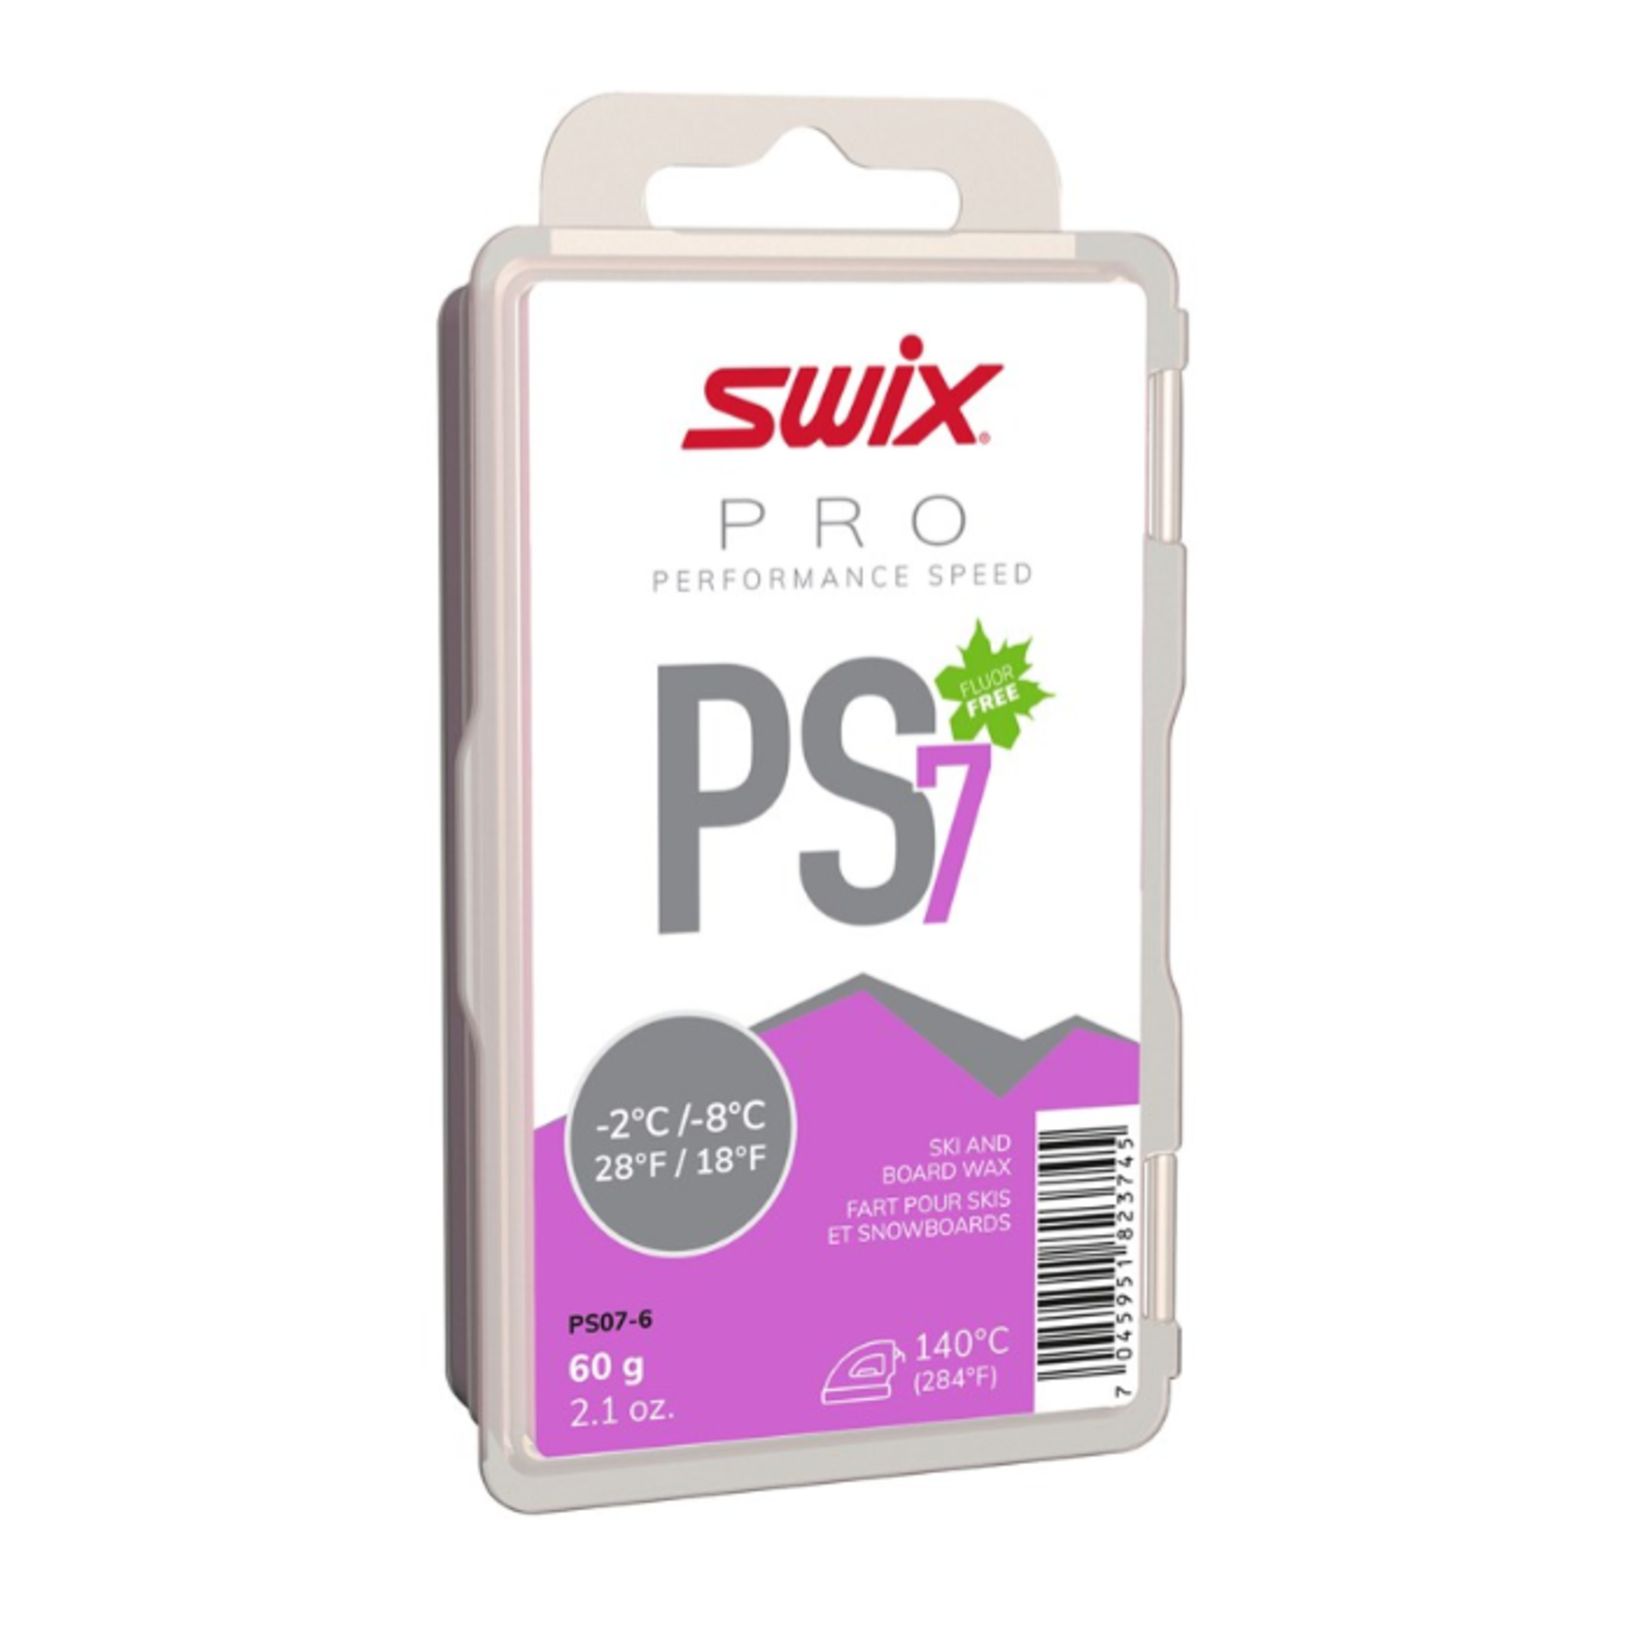 Swix PS7 Violet, -2°C/-8°C, 60g